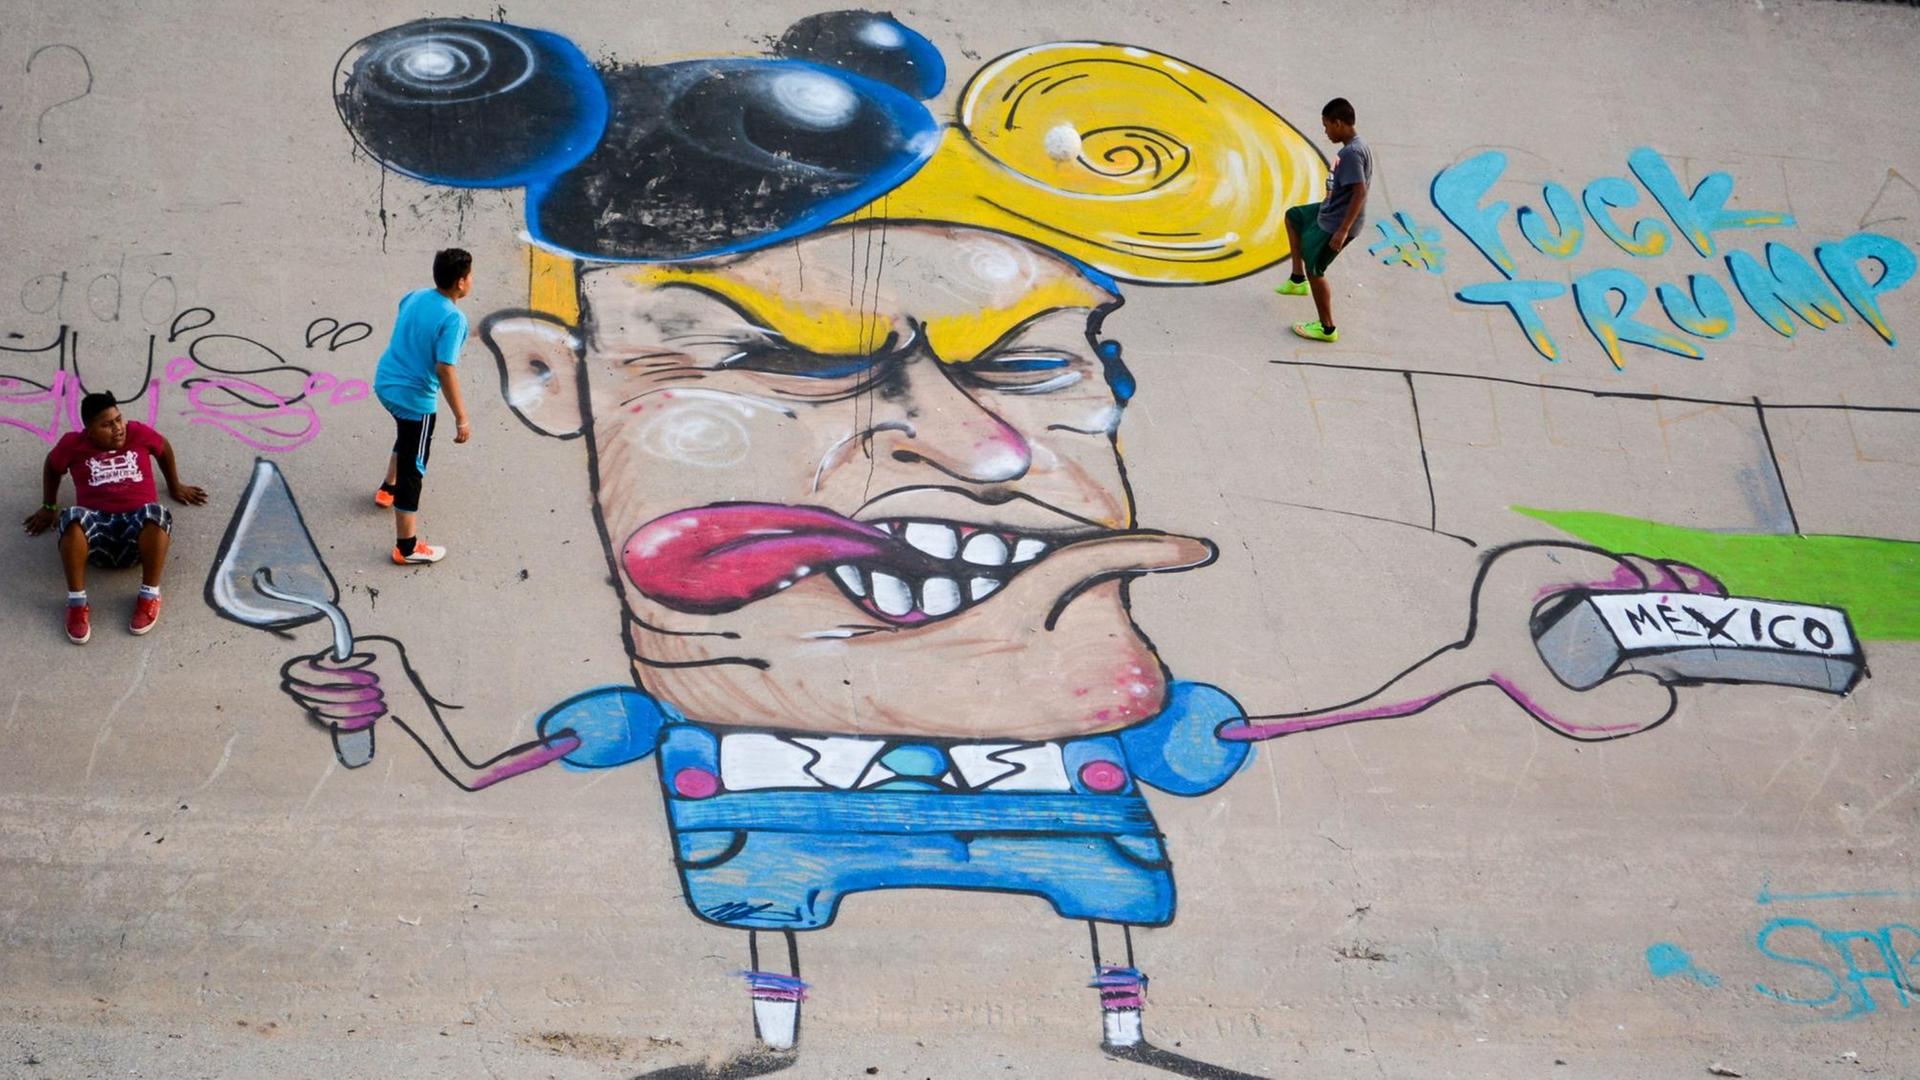 Kinder spielen am 23.06.2016 neben einer Graffiti-Karikatur des designierten US-Präsidenten Donald Trump im Flussbett des Rio Grande (Rio Bravo in Mexiko). Ein Streetart-Künstler sprayte die neun Meter große Karikatur an die Wand des zubetonierten Kanals an der Grenze zwischen Mexiko und den USA in der Stadt Ciudad Juarez.